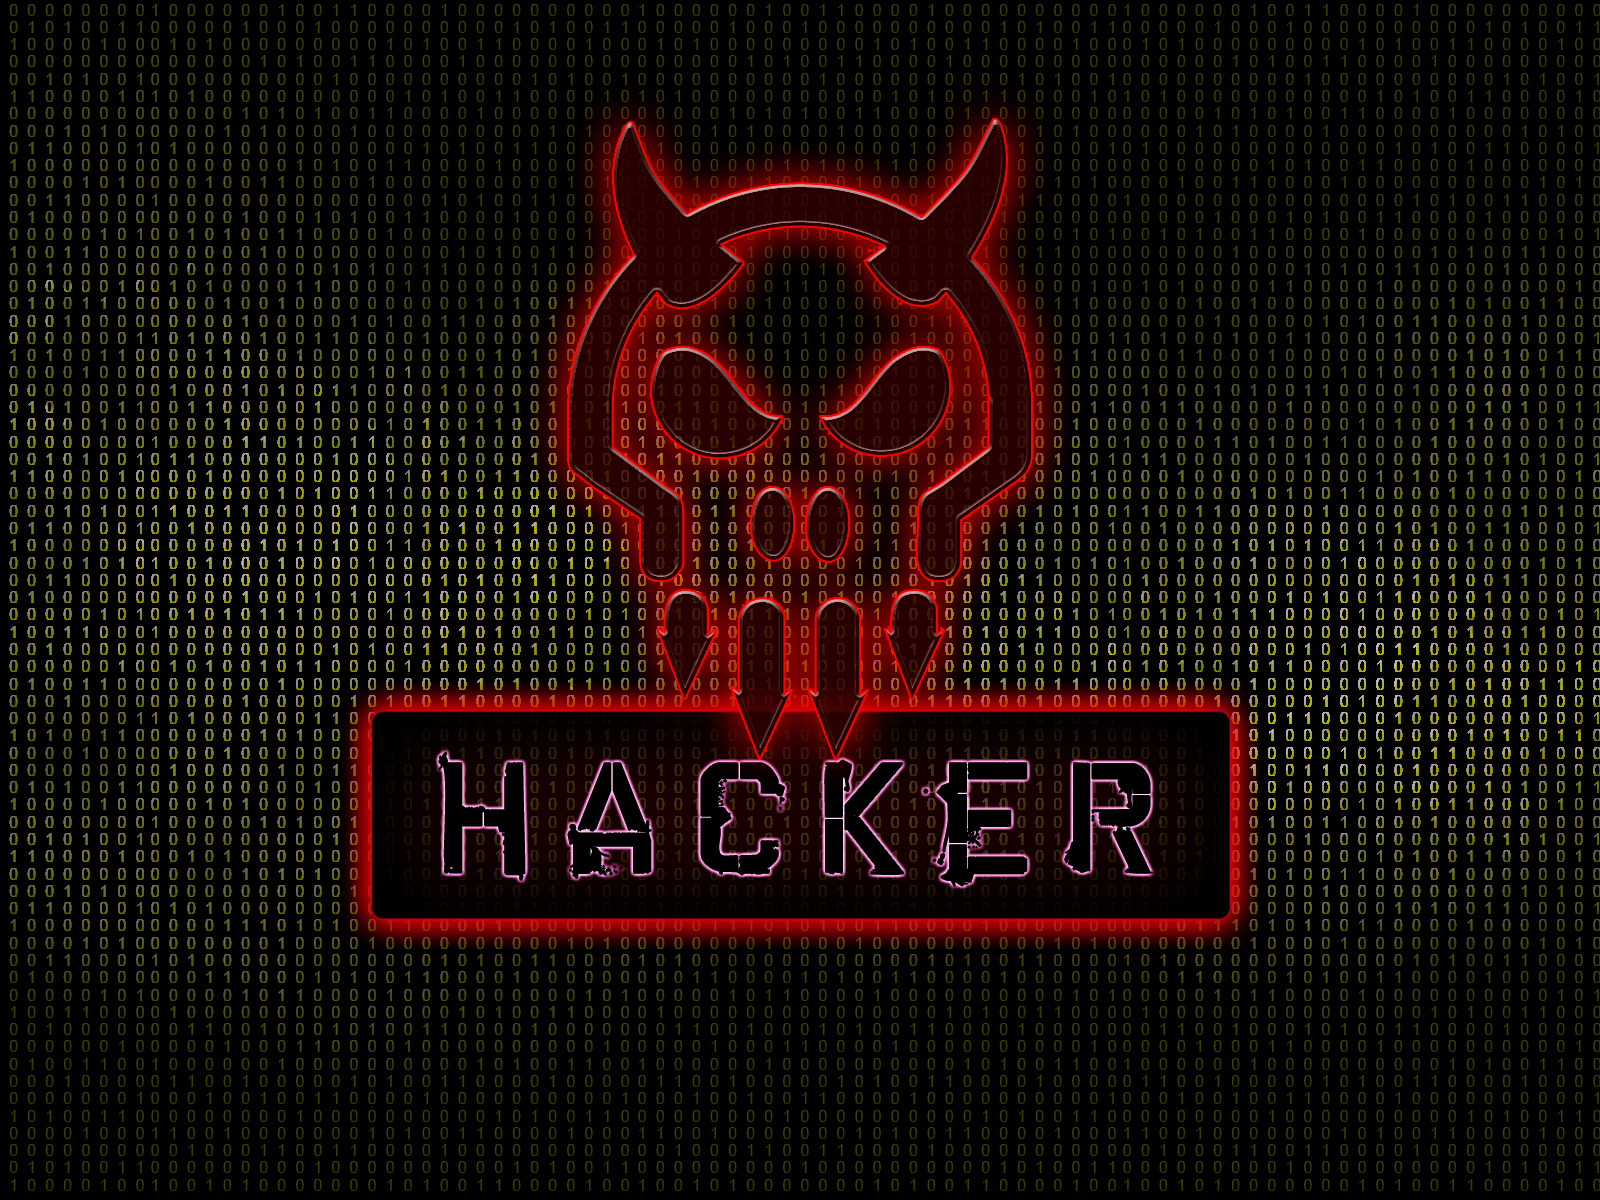 Red Skull Hacker wallpaper | brands and logos | Wallpaper Better